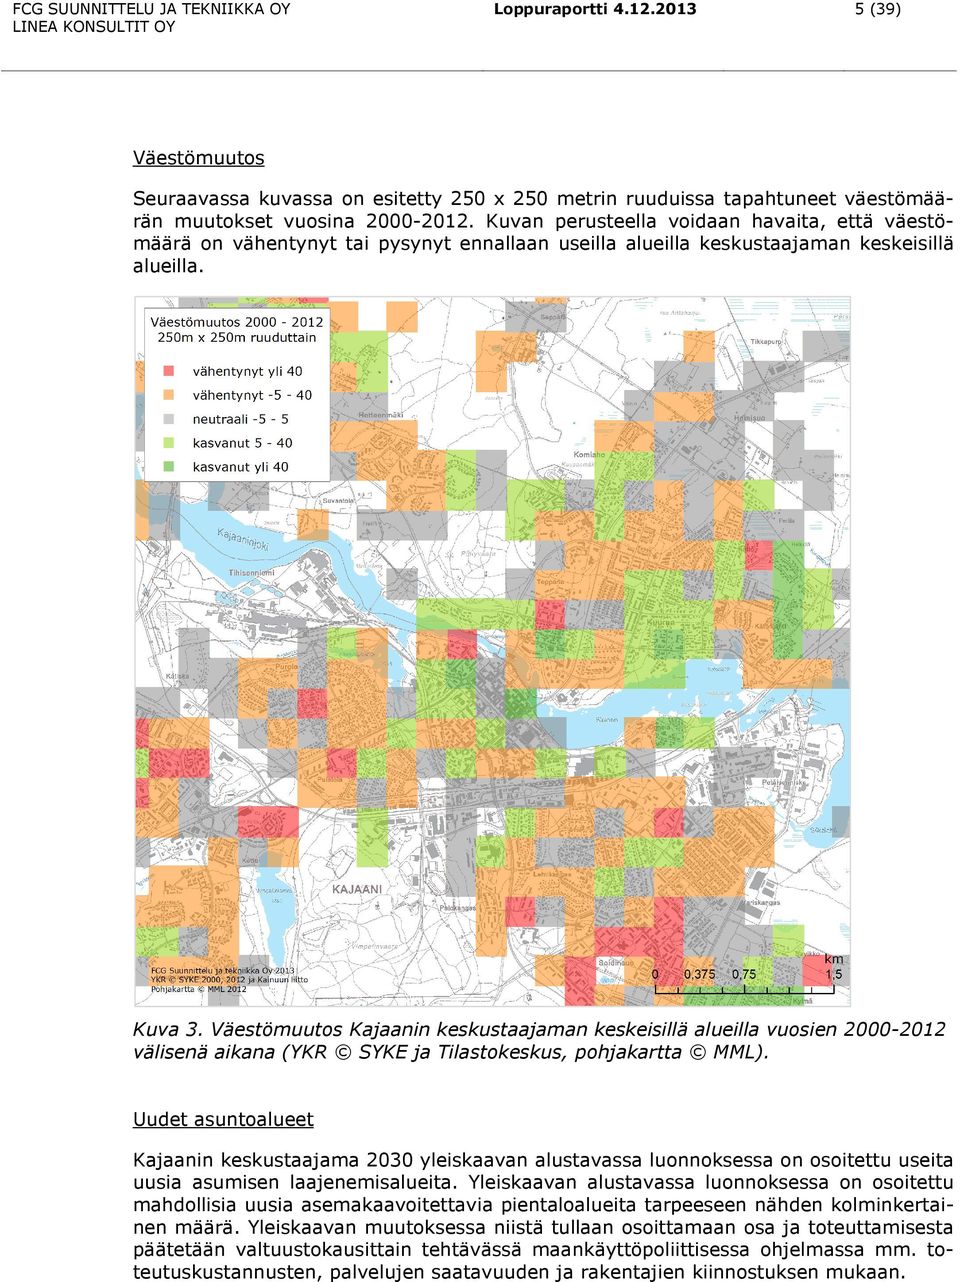 Väestömuutos Kajaanin keskustaajaman keskeisillä alueilla vuosien 2000-2012 välisenä aikana (YKR SYKE ja Tilastokeskus, pohjakartta MML).